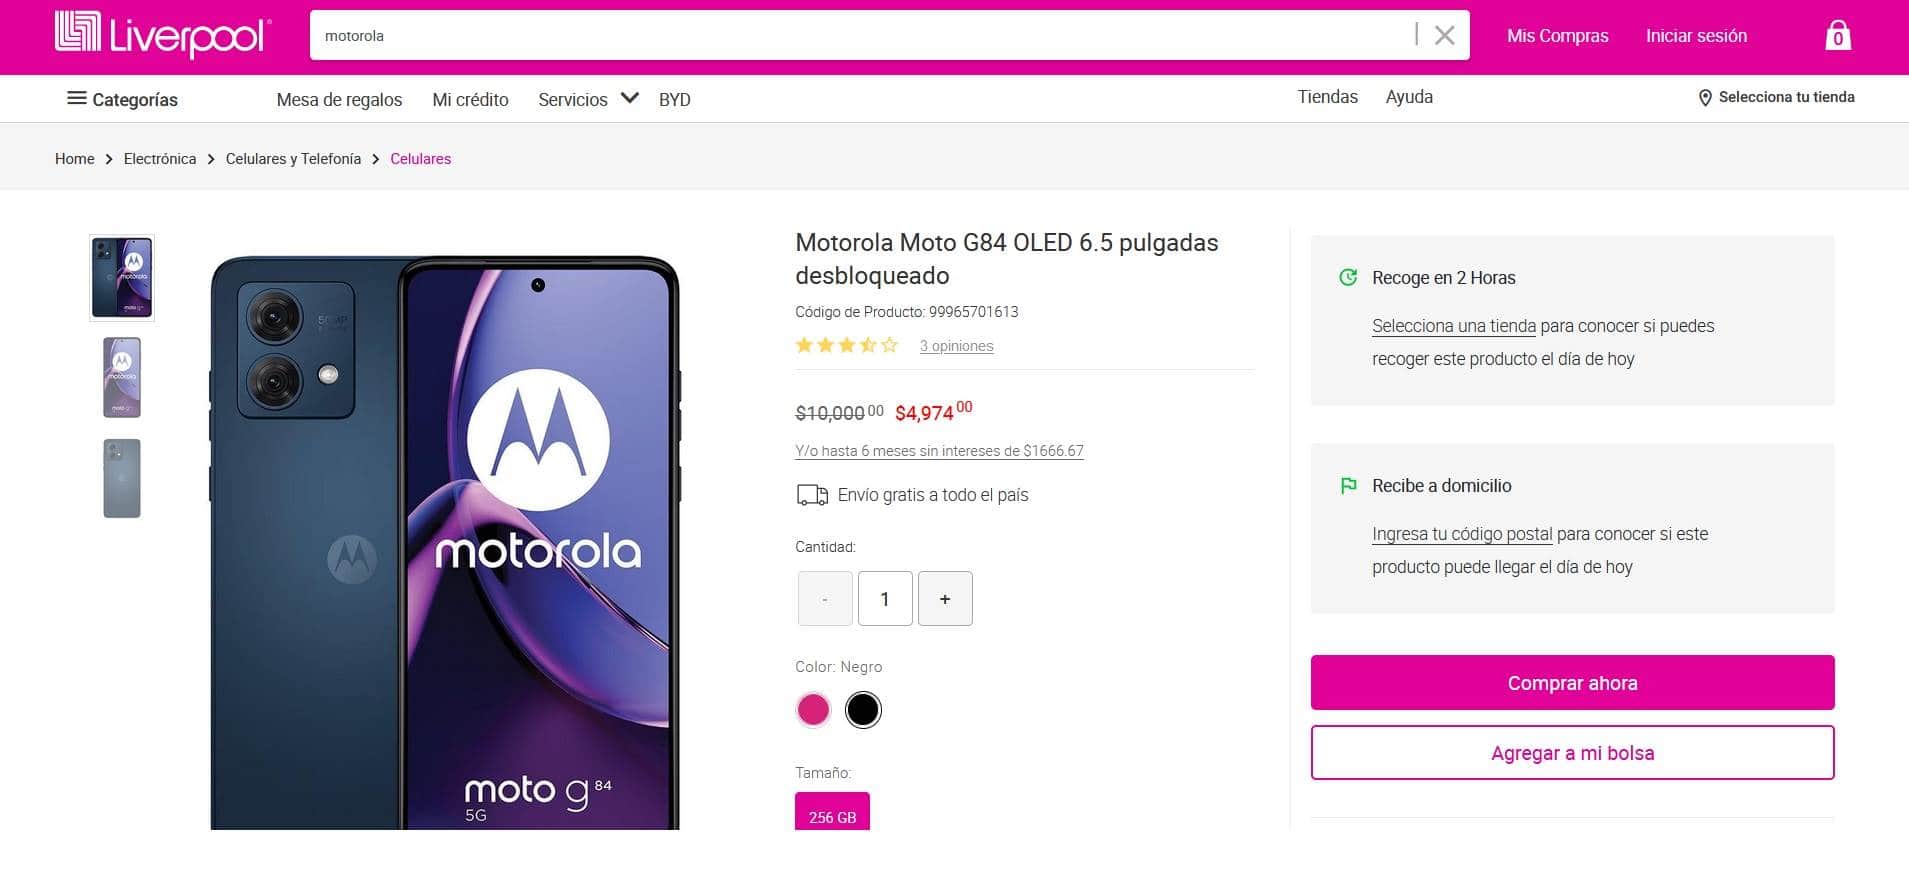 Cuánto cuesta el smartphone Motorola Moto G84 en Liverpool